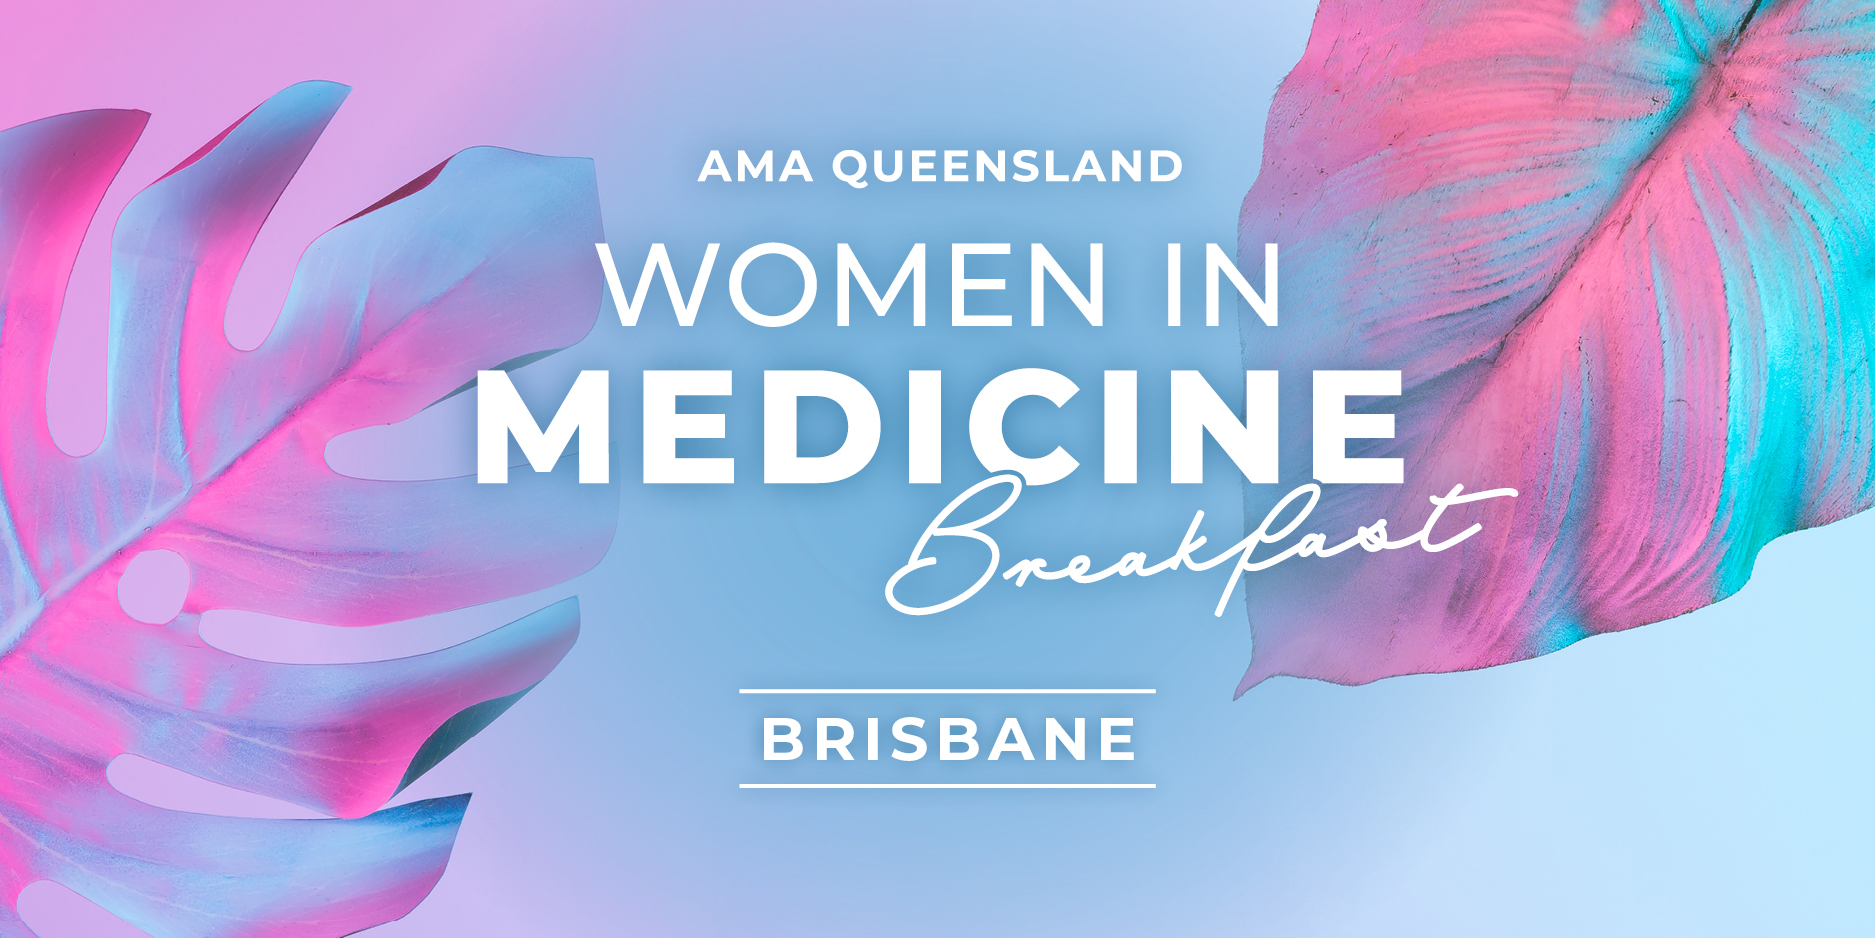 Women in Medicine Breakfast - Brisbane